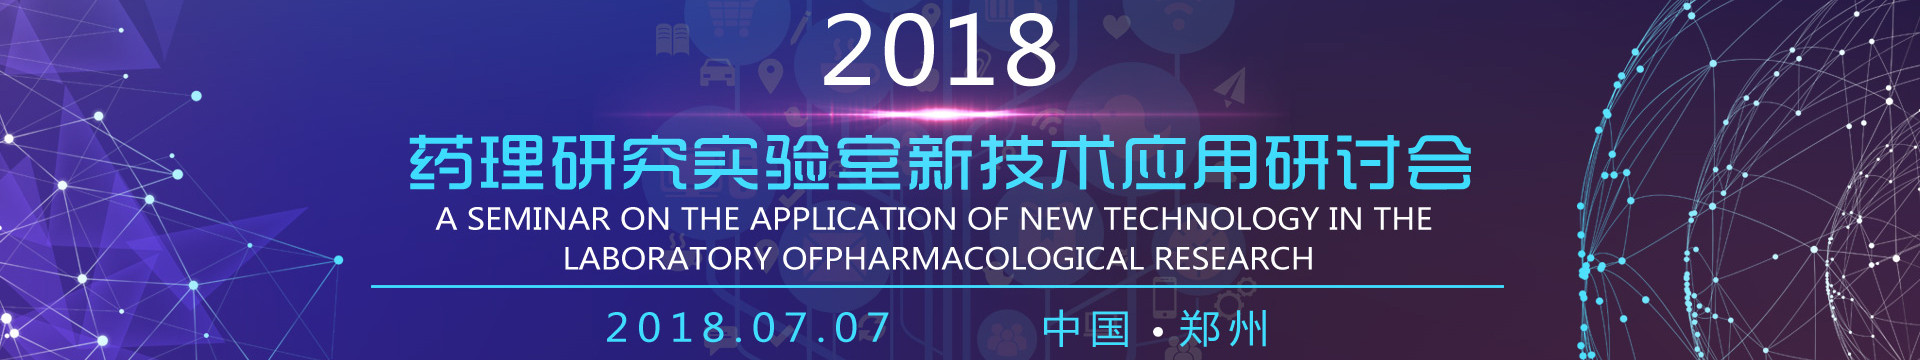 2018药理研究实验室新技术应用研讨会